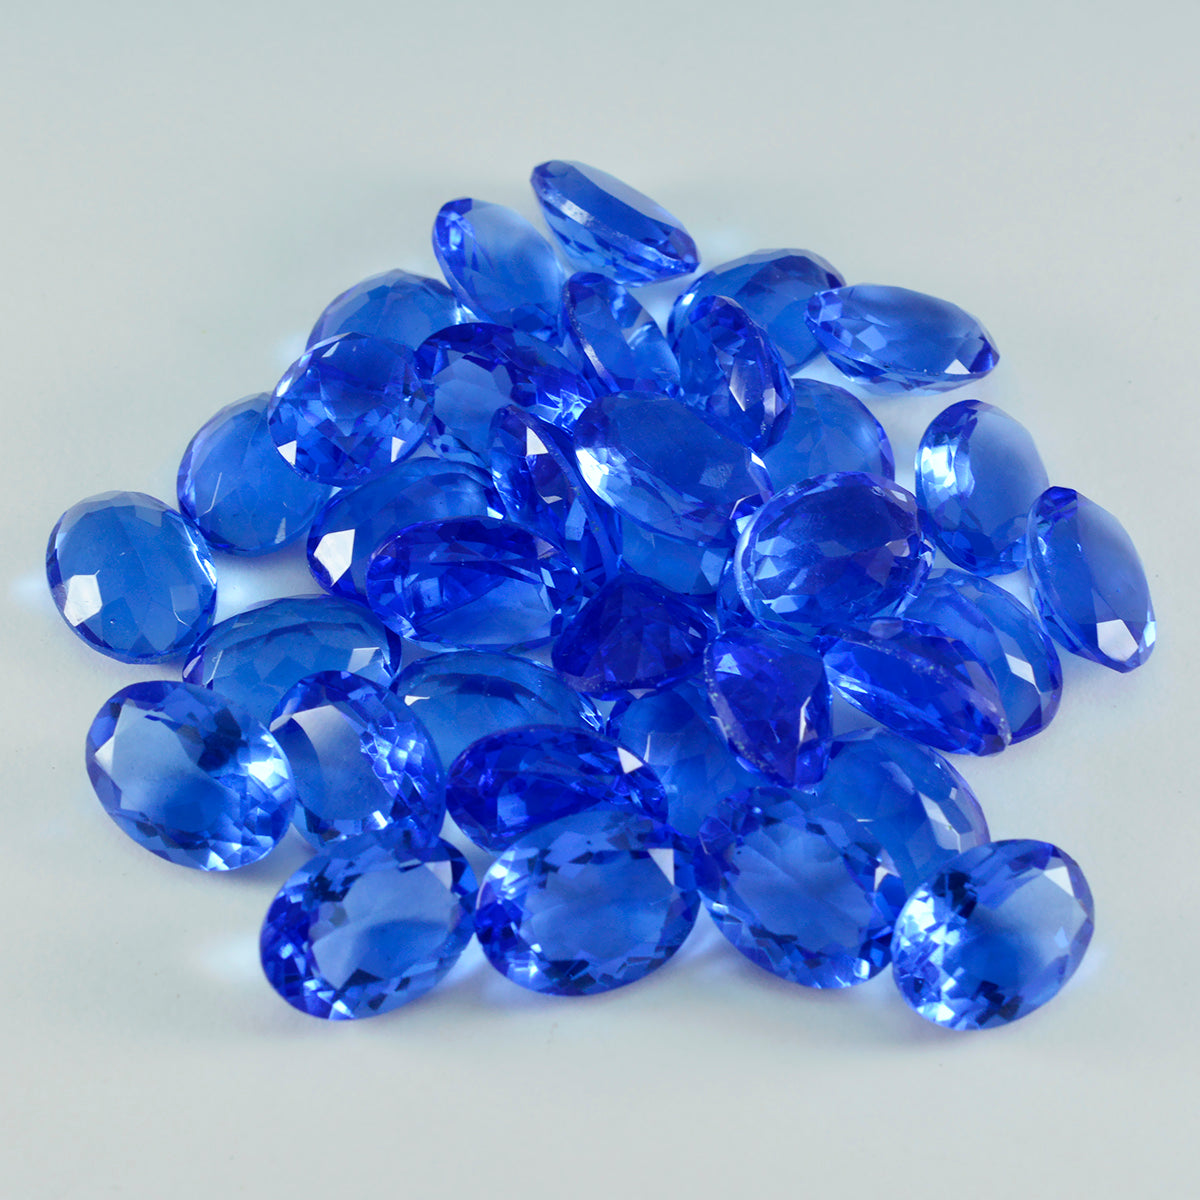 riyogems 1 шт. синий сапфир cz ограненный 9x11 мм драгоценный камень овальной формы хорошего качества